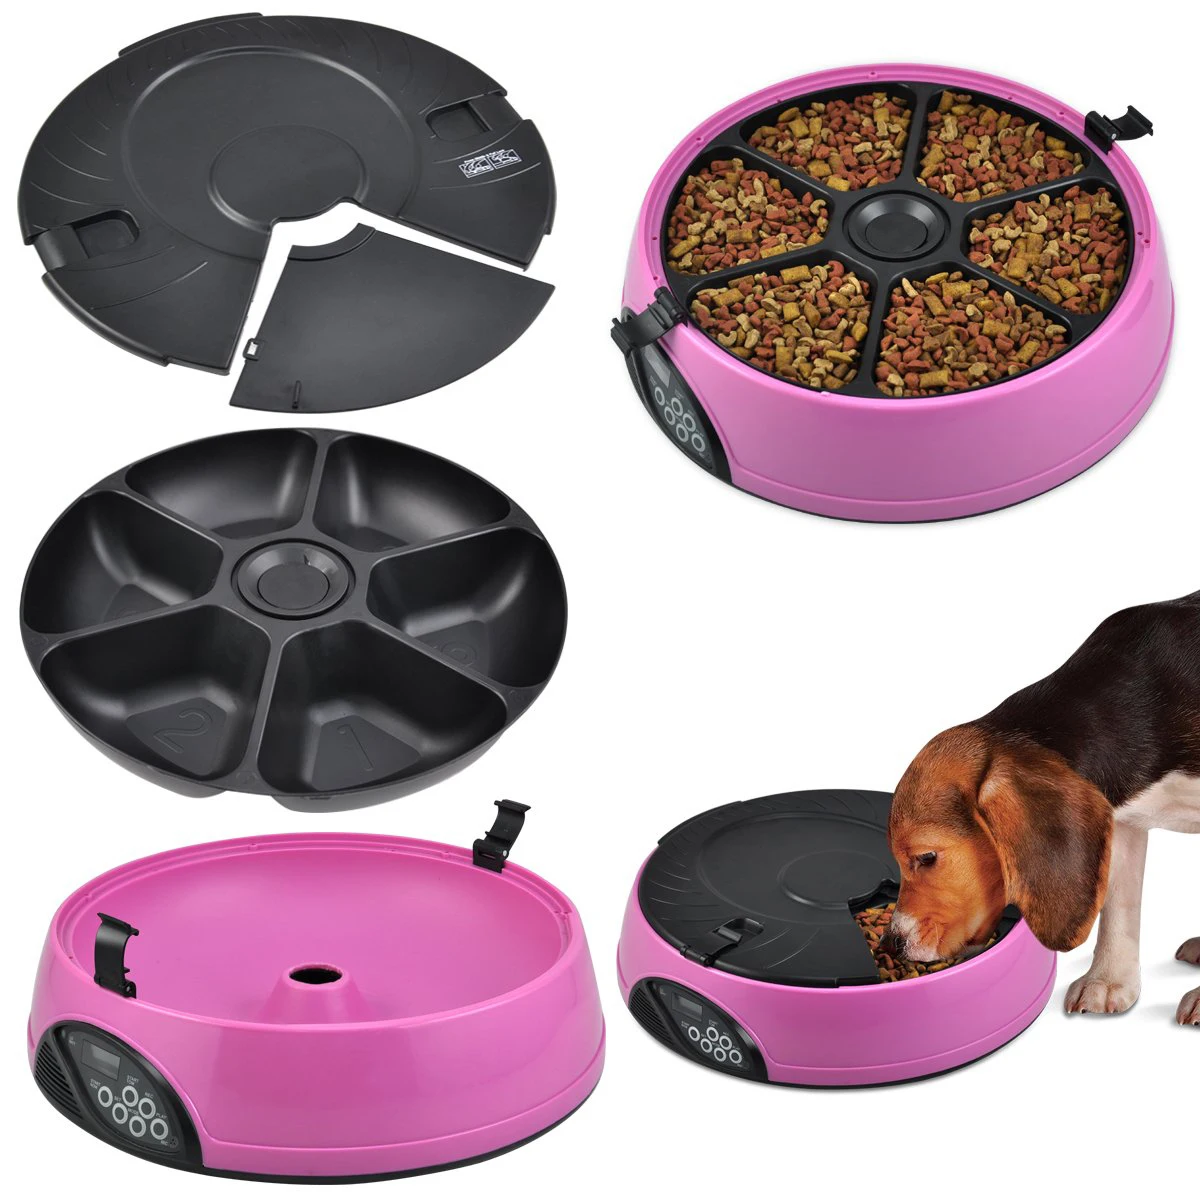 6 дней Автоматическая миска для кормления домашних животных 6 еды-кошка или собака голодень Авто диспенсер миска с диктофоном розовый